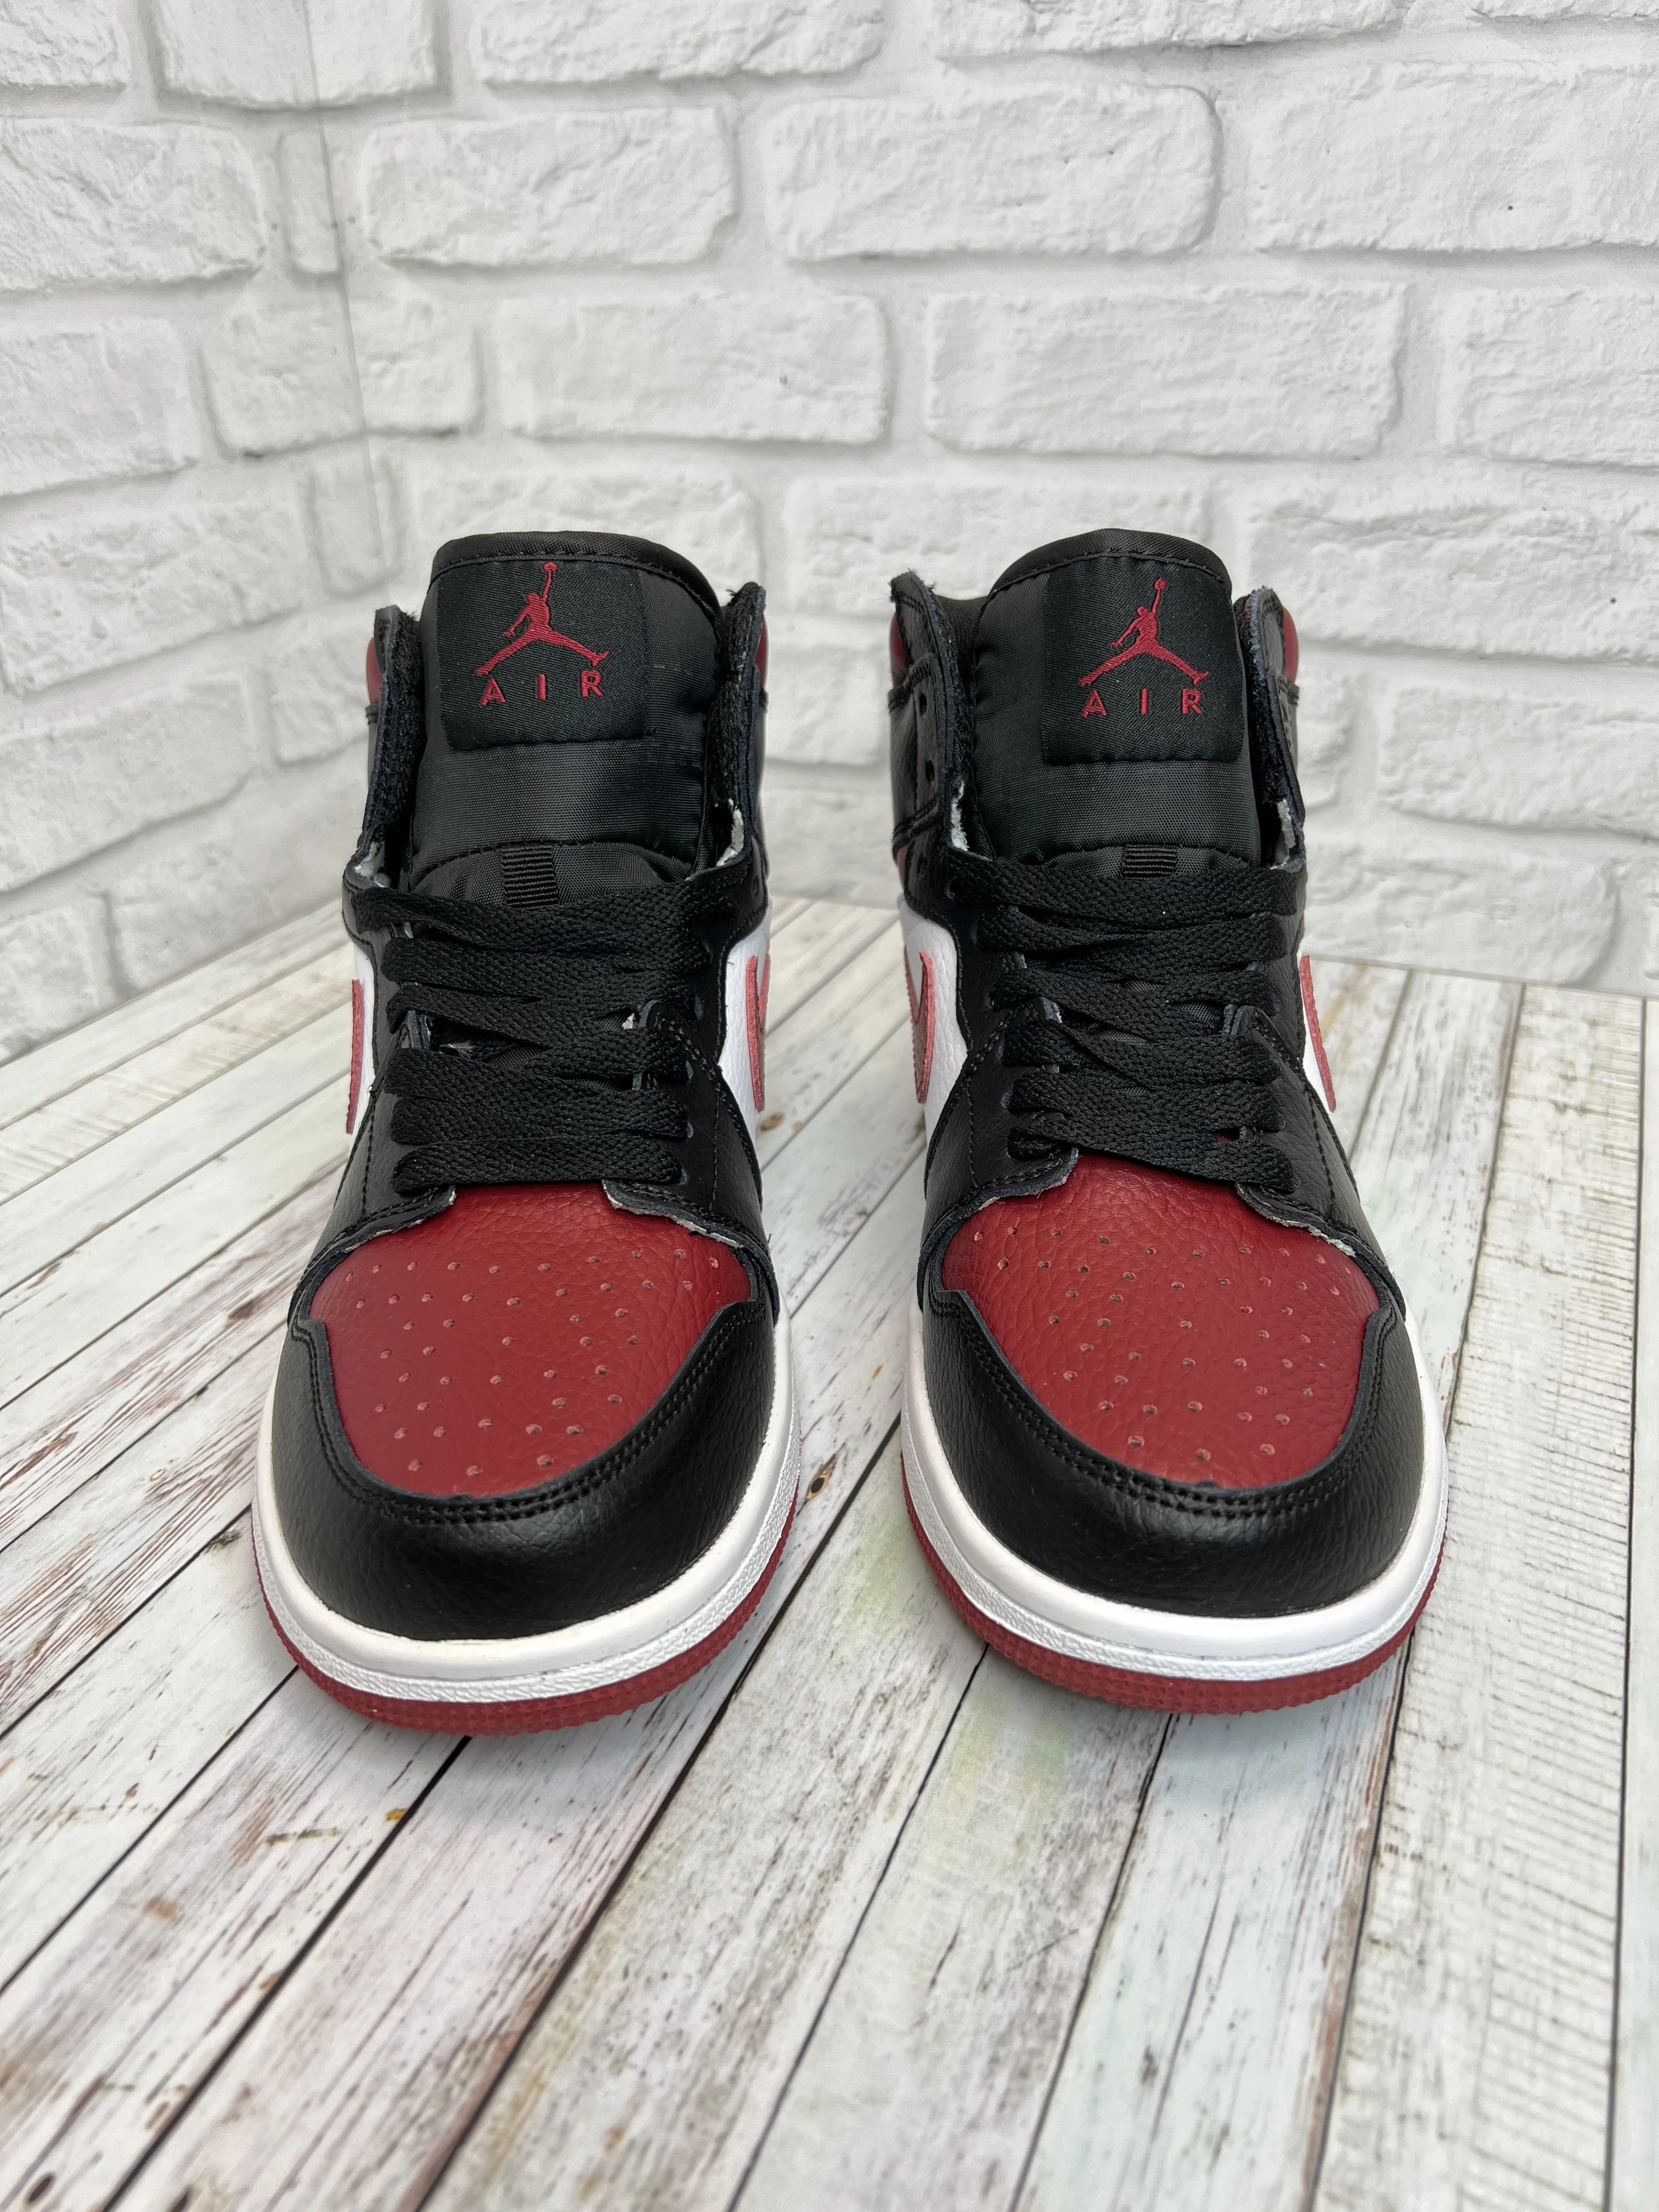 Кроссовки Nike Air Jordan (Джордан) подростковые бордовые с черным и белым | Обувь